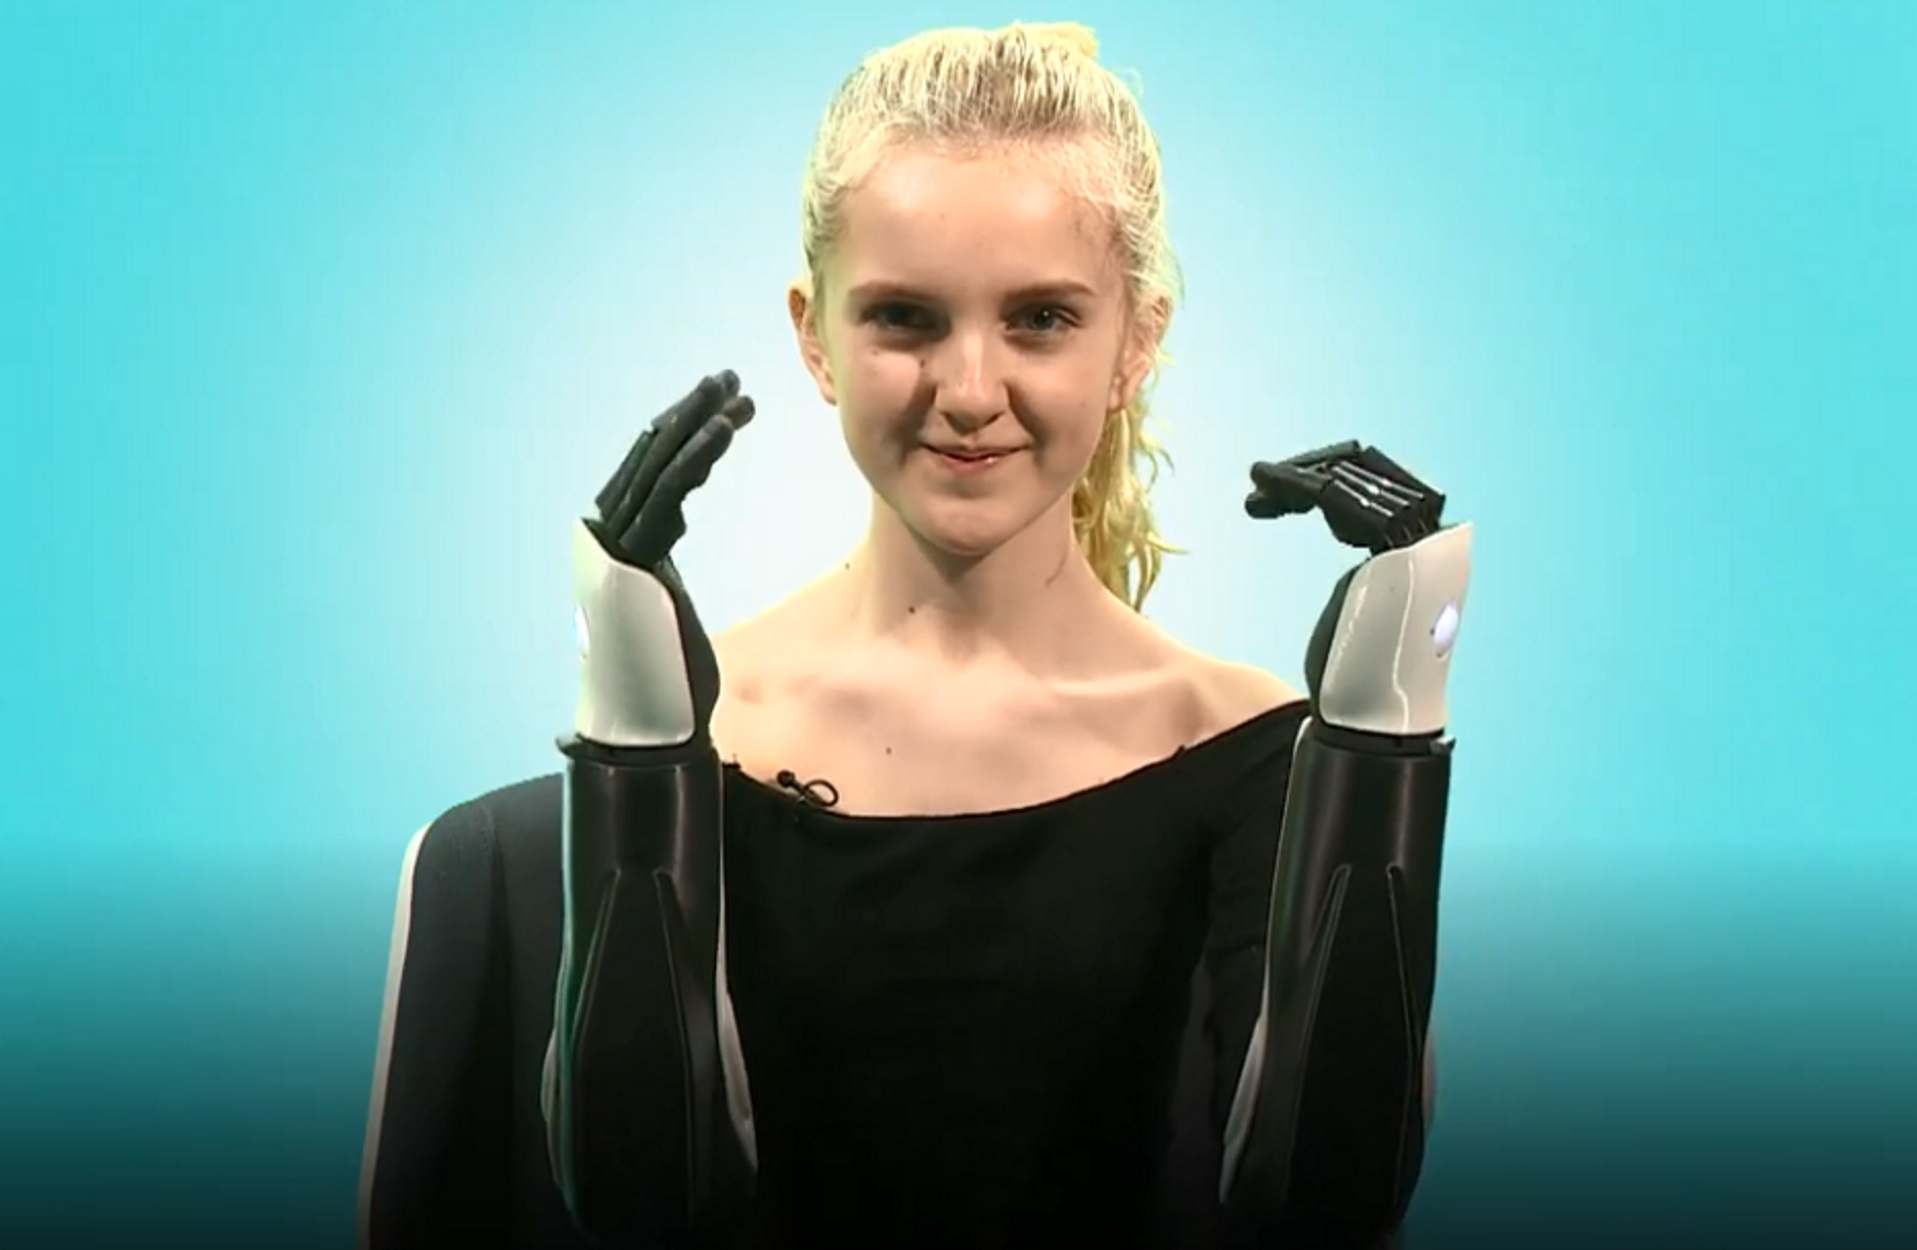 Δύναμη της θέλησης! 14χρονη με τεχνητά χέρια ξεκινά καριέρα στην τηλεόραση (pics, video)